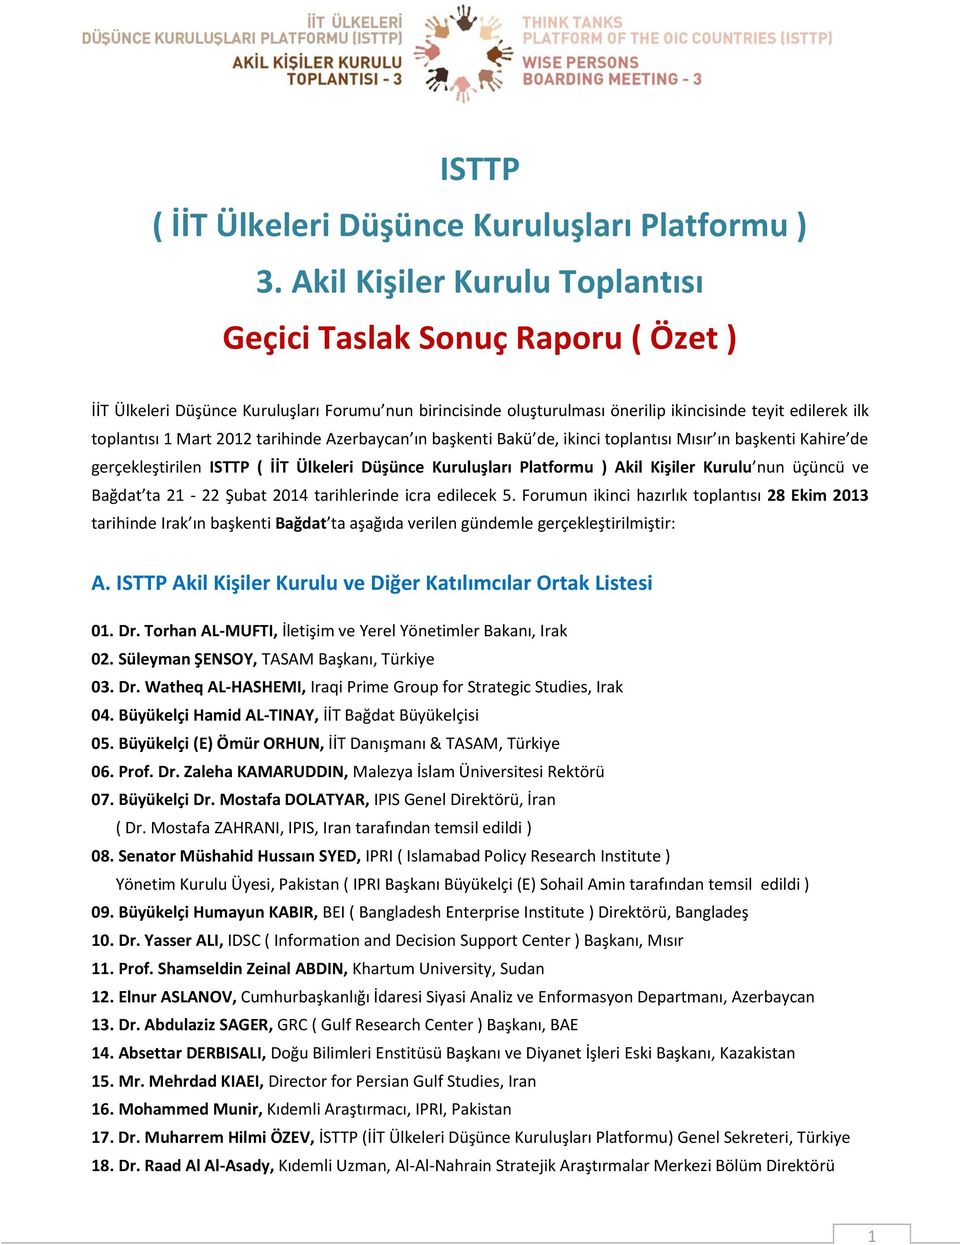 2012 tarihinde Azerbaycan ın başkenti Bakü de, ikinci toplantısı Mısır ın başkenti Kahire de gerçekleştirilen ISTTP ( İİT Ülkeleri Düşünce Kuruluşları Platformu ) Akil Kişiler Kurulu nun üçüncü ve